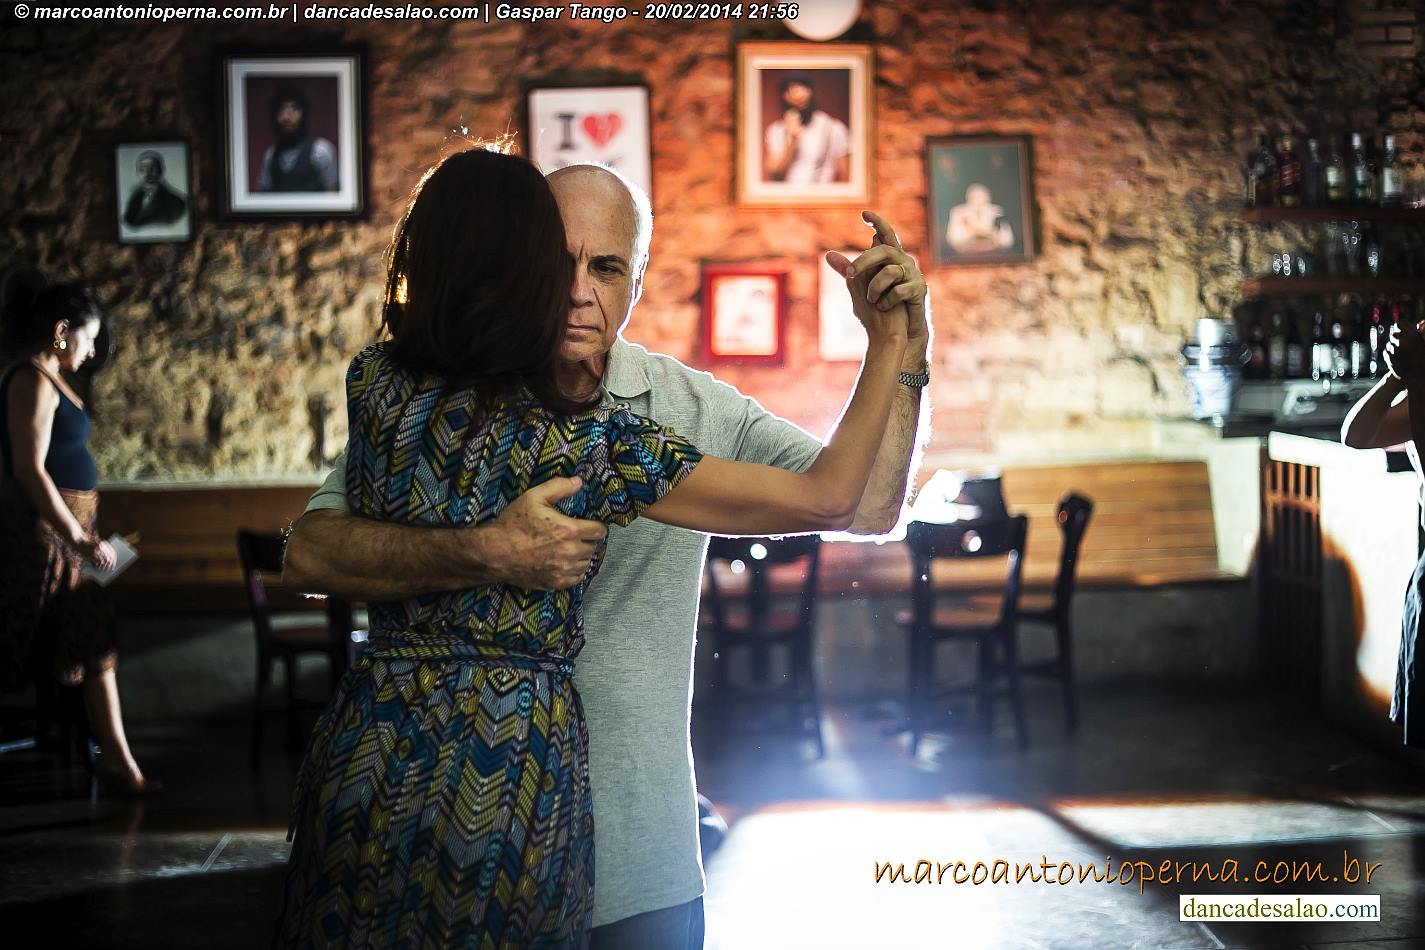 Baile de tango (Milonga) no bar Gaspar promovido por Javier Amaya e Patricia Amaya - Rio de Janeiro - RJ - 20.02.2014